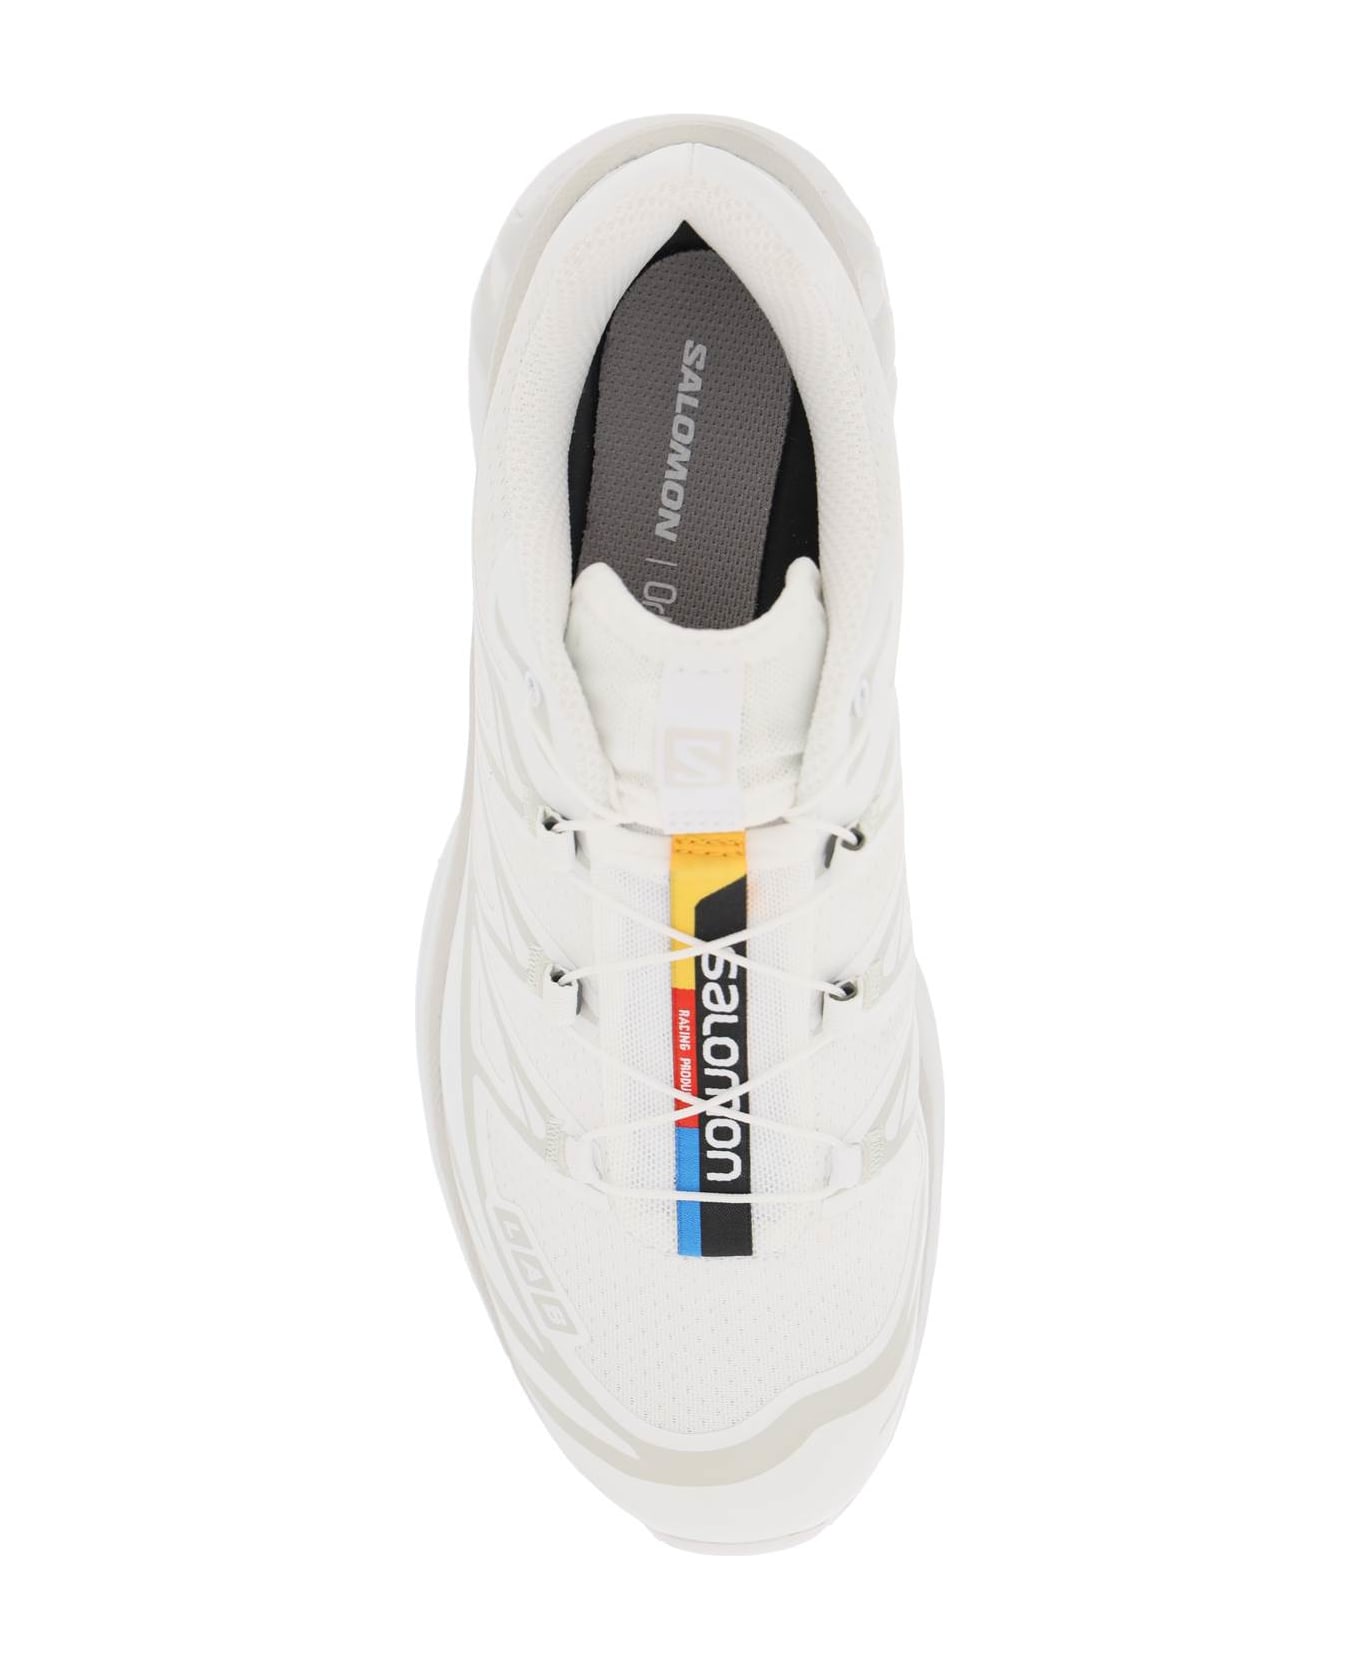 Salomon Xt-6 Sneakers - WHITE WHITE LUNAR ROCK (White)